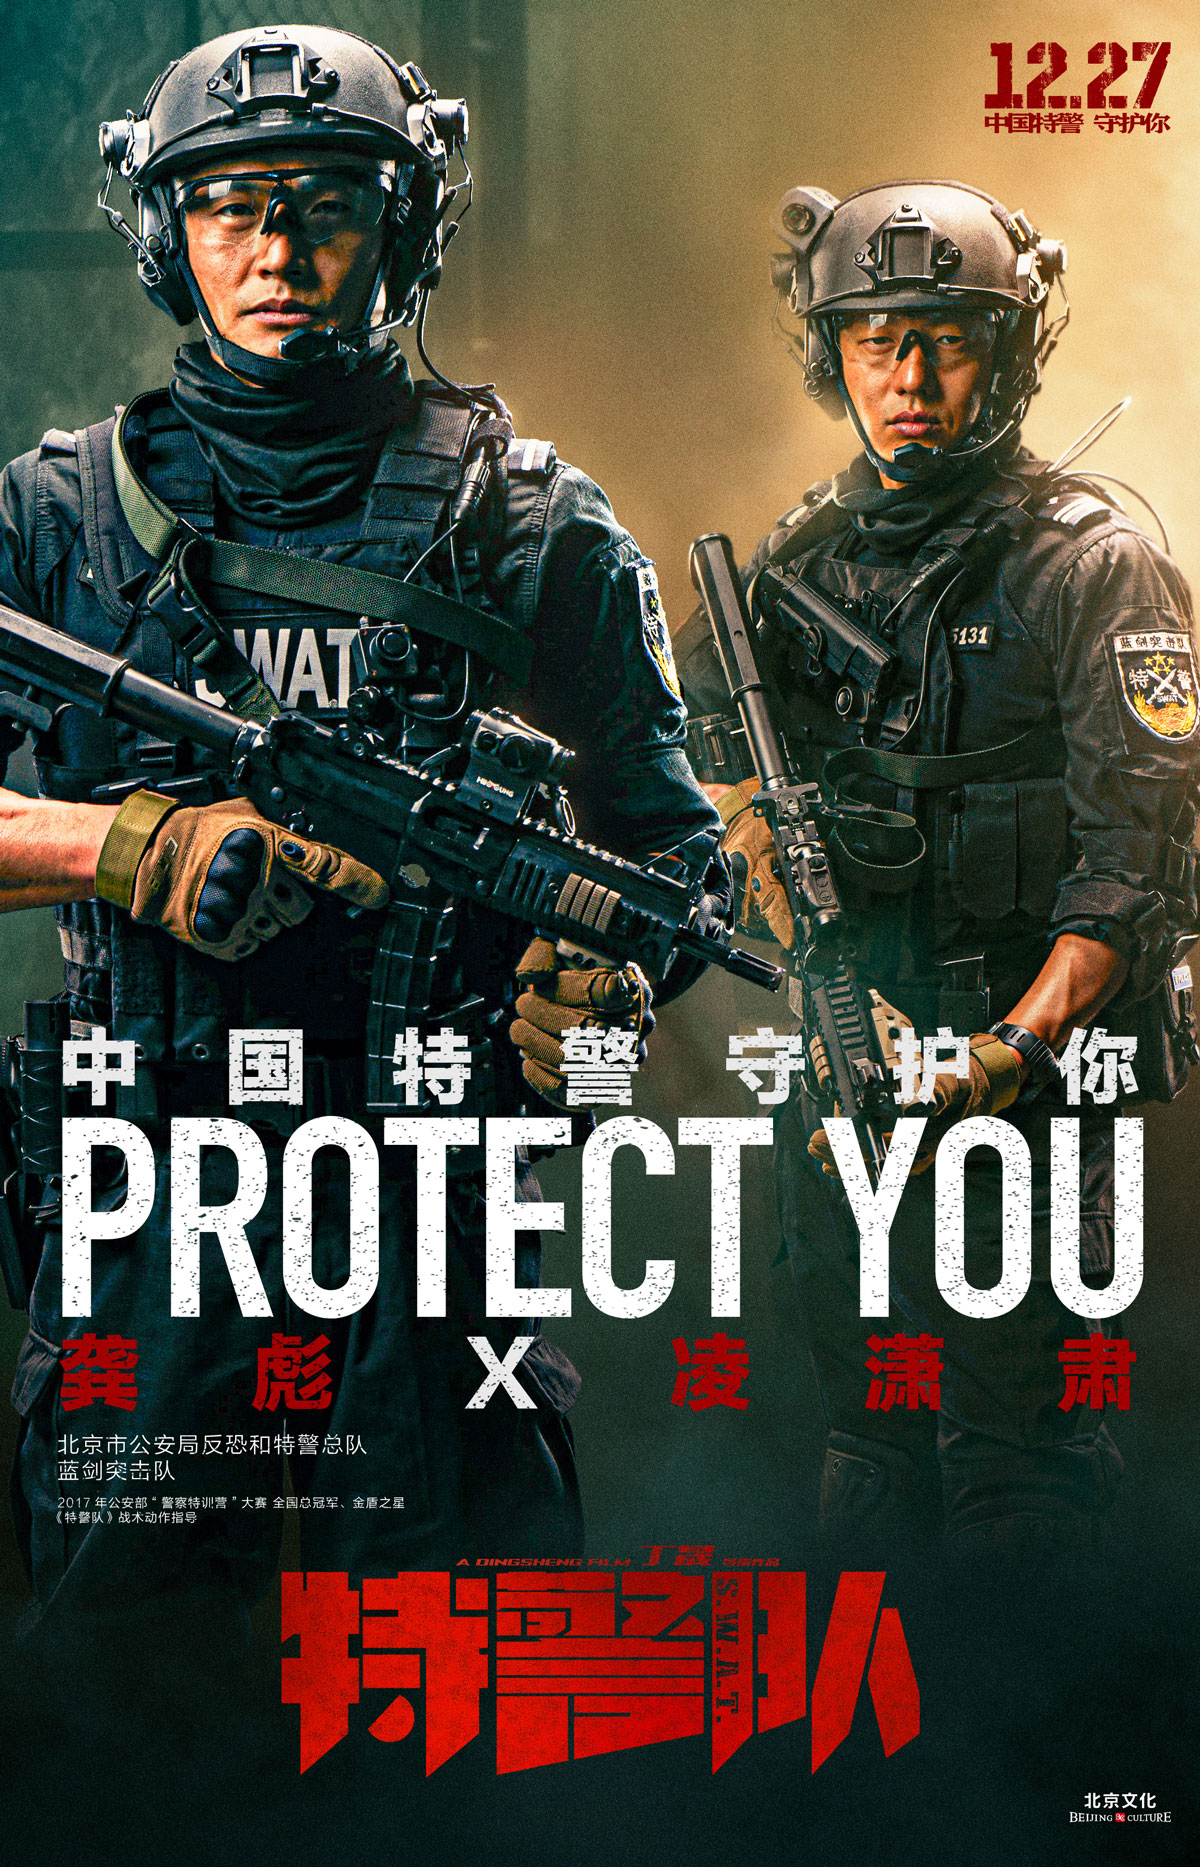 《特警队》“守护”海报曝光 致敬中国特警